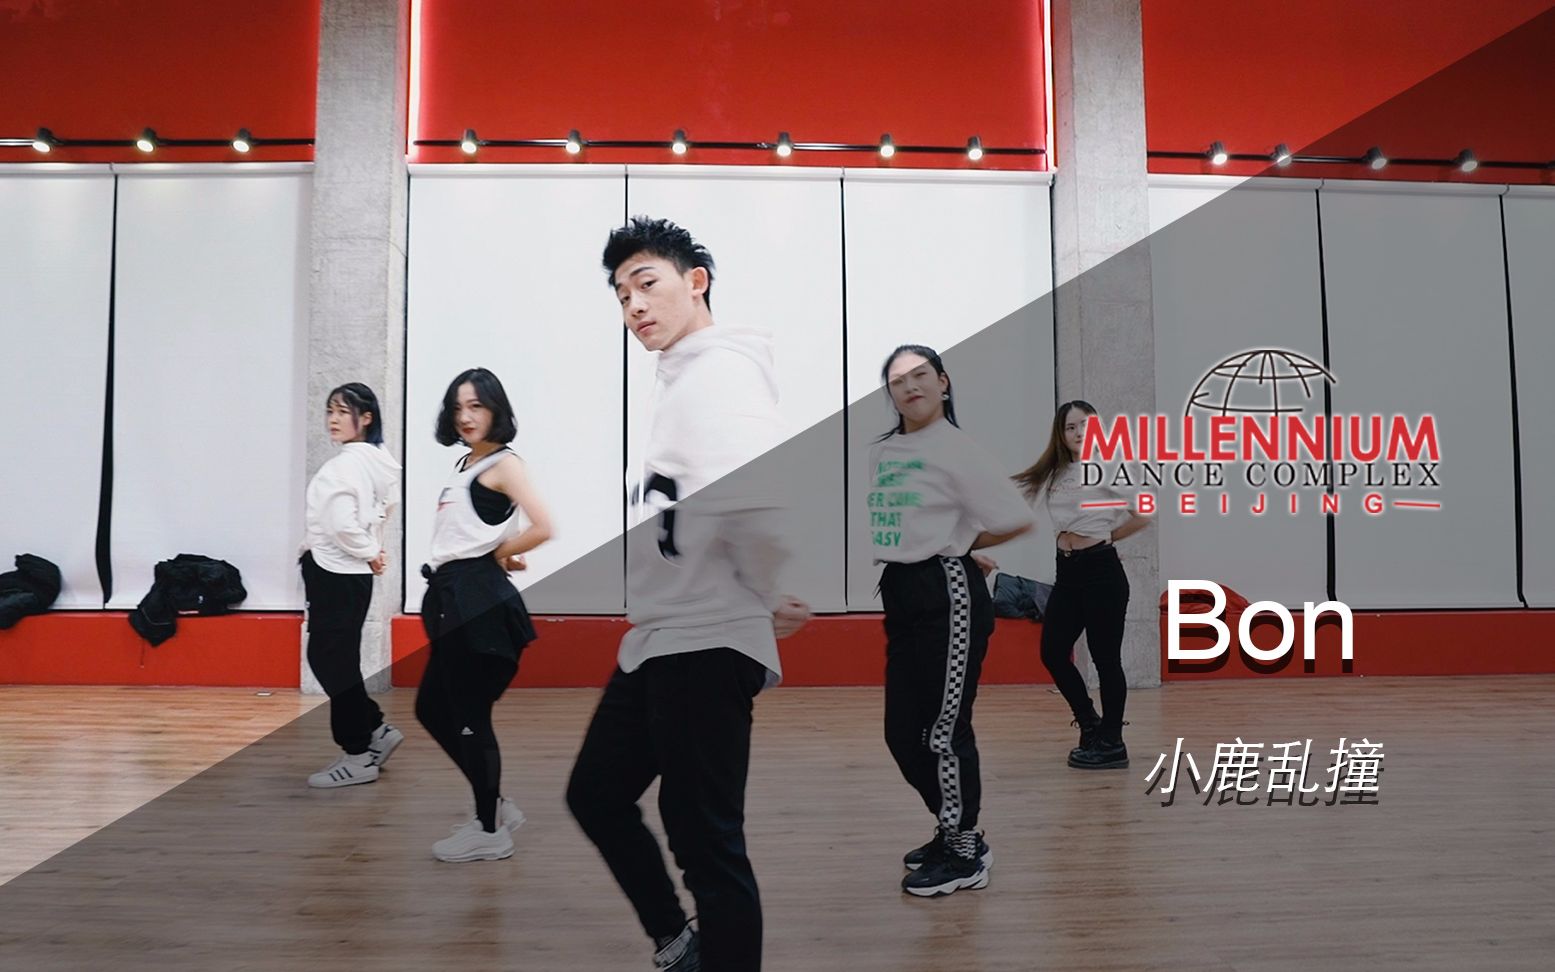 【红房子】《小鹿乱撞》砰砰的心跳 Bon可爱编舞【Millennium红房子·北京·798旗舰店】